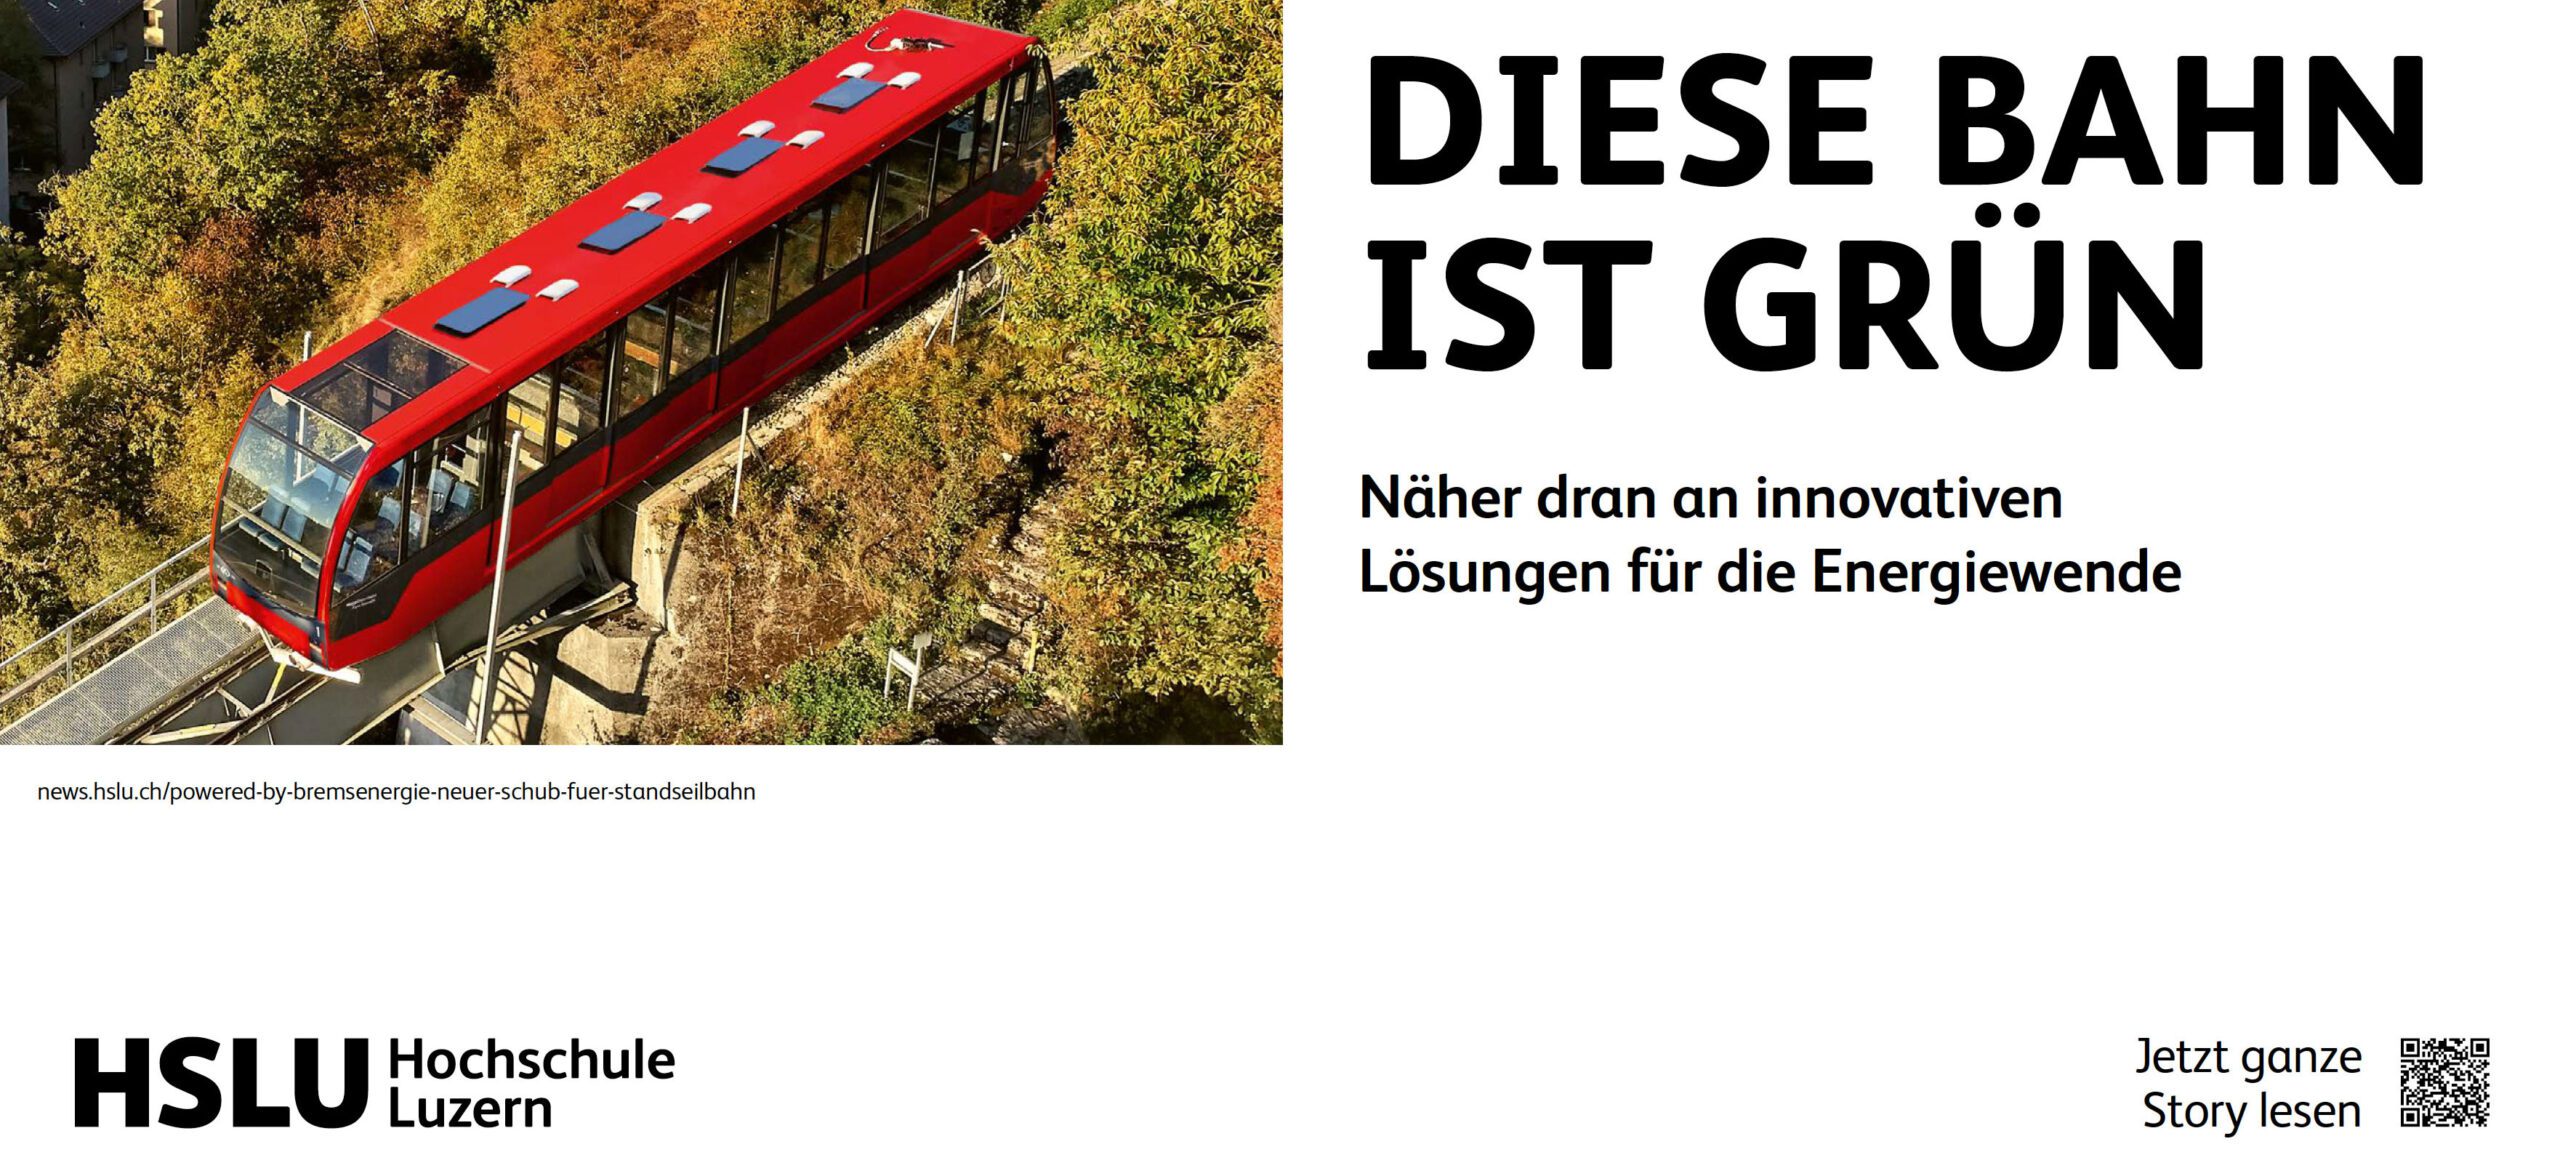 Markenauftritt Hochschule Luzern: Diese Bahn ist grün